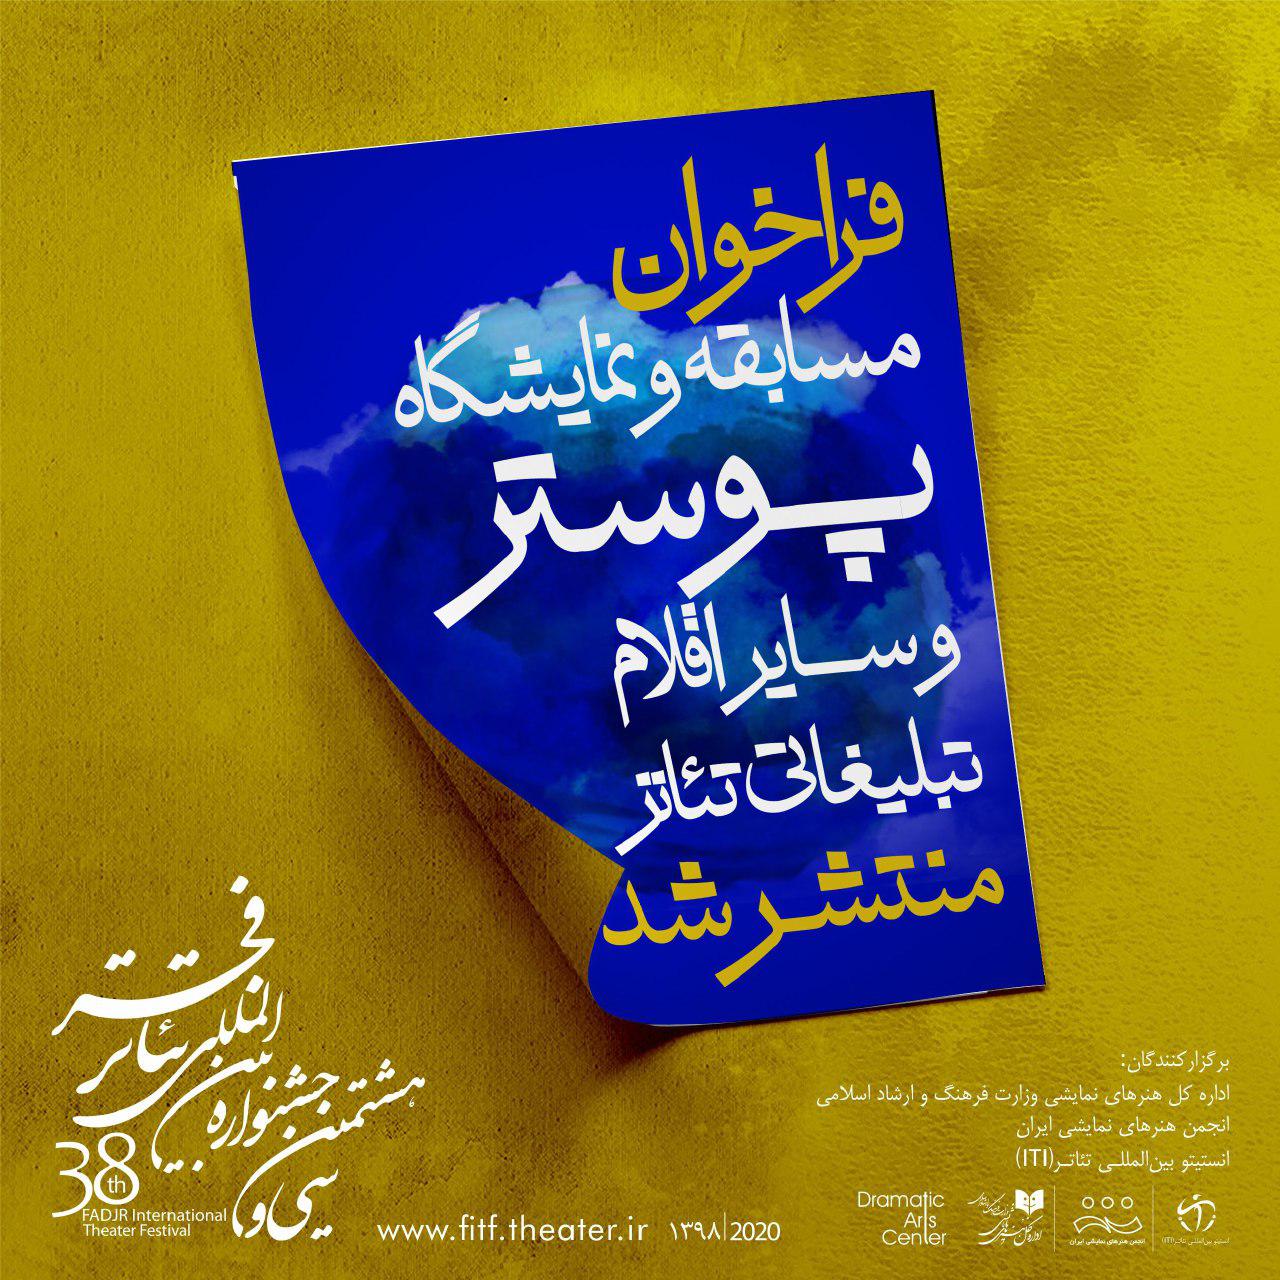 فراخوان مسابقه و نمایشگاه پوستر و سایراقلام تبلیغاتی جشنواره تئاتر فجر